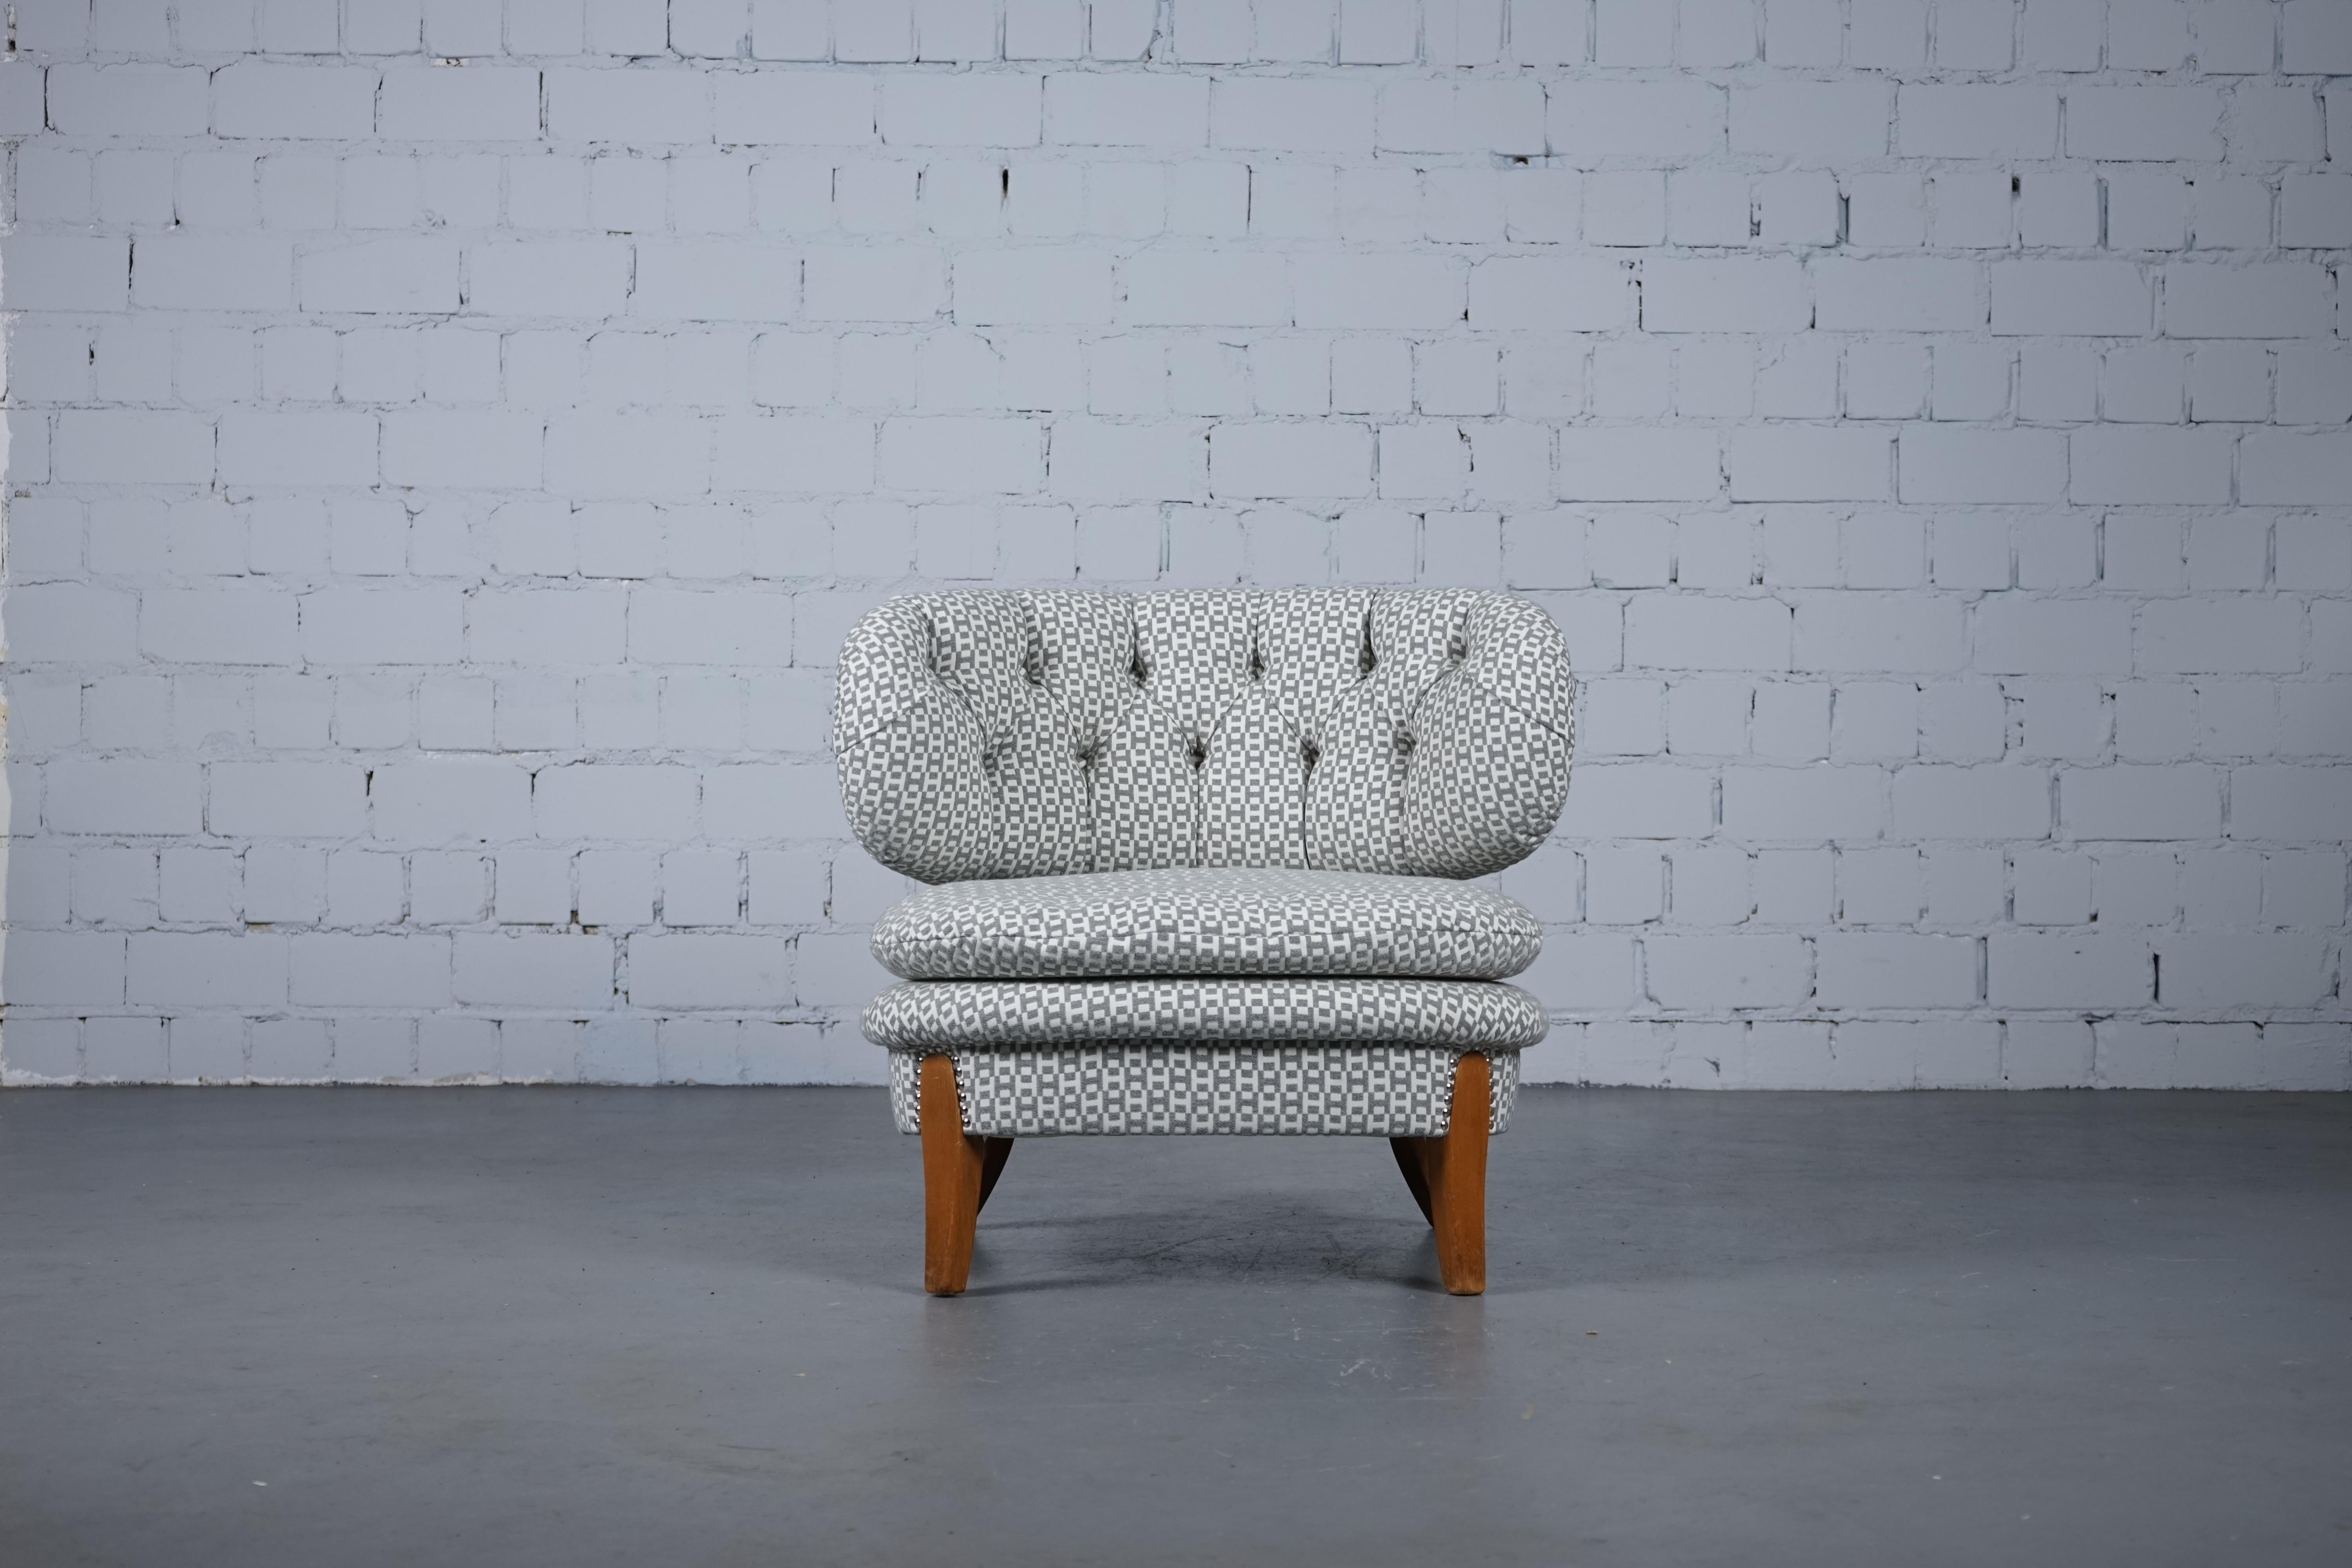 Einzigartiger gepolsterter Hermès Lounge Chair von Otto Schulz für Boet, Schweden.

Neue Polsterung mit hochwertigem Stoff von Hermes Paris/ Dedar Milano.

H infini, ein von Henri d'Origny entworfener Hermès-Klassiker, verleiht seinem Mikromotiv